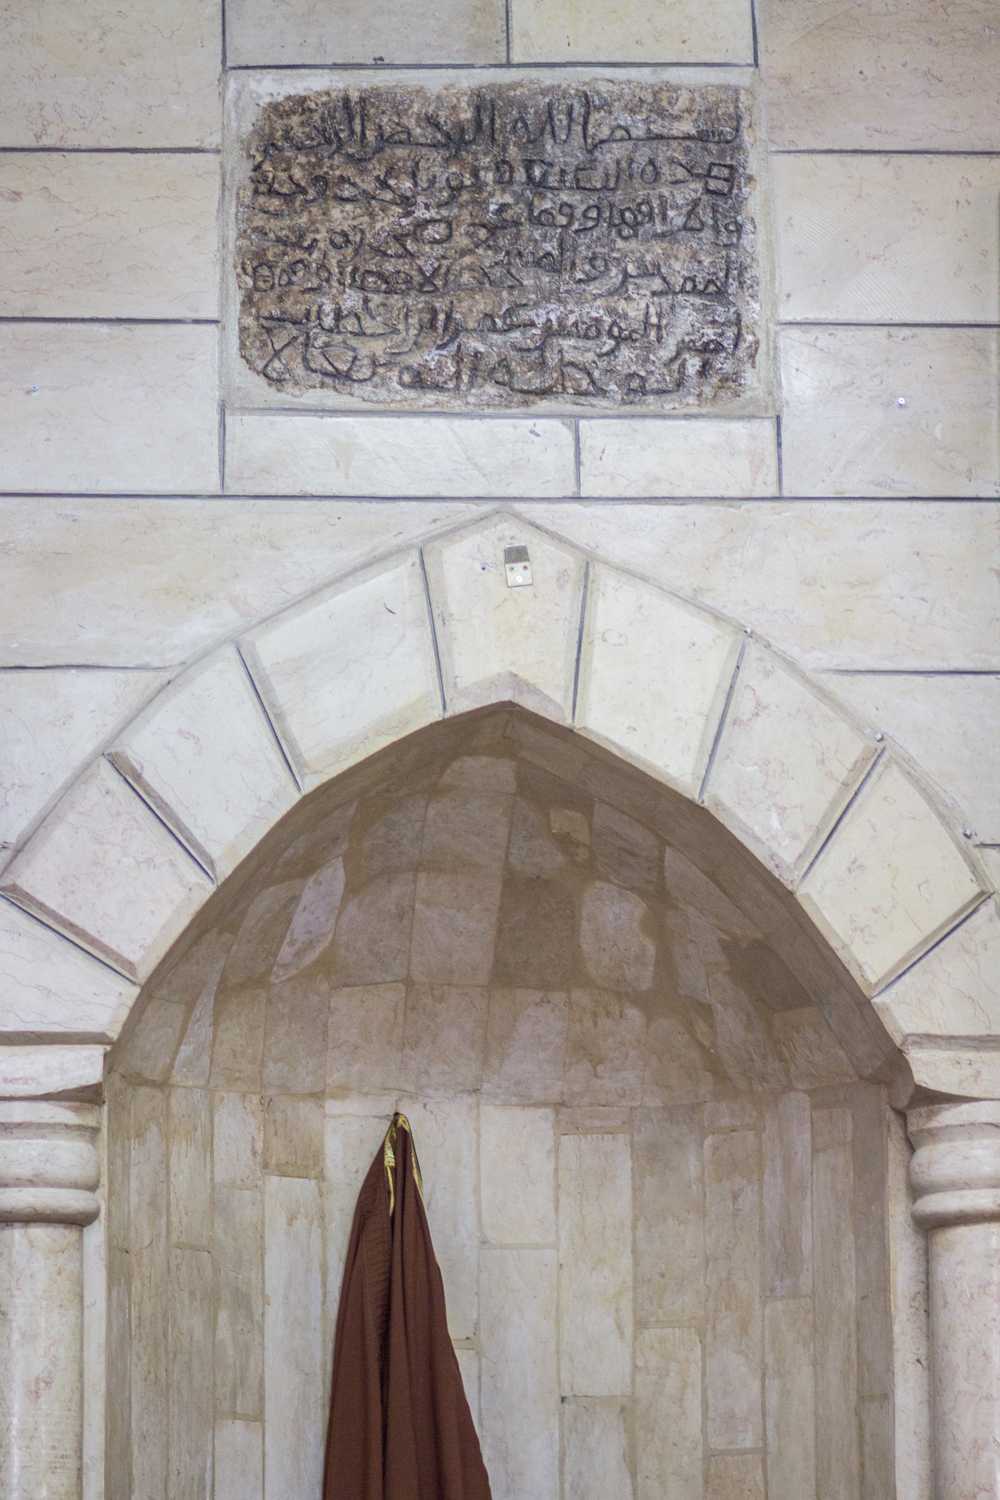 Una inscripción milenaria en la mezquita de la aldea de Nuba que menciona el término “Beit al-Maqdas” en el contexto de la Cúpula de la Roca. (Assaf Avraham)